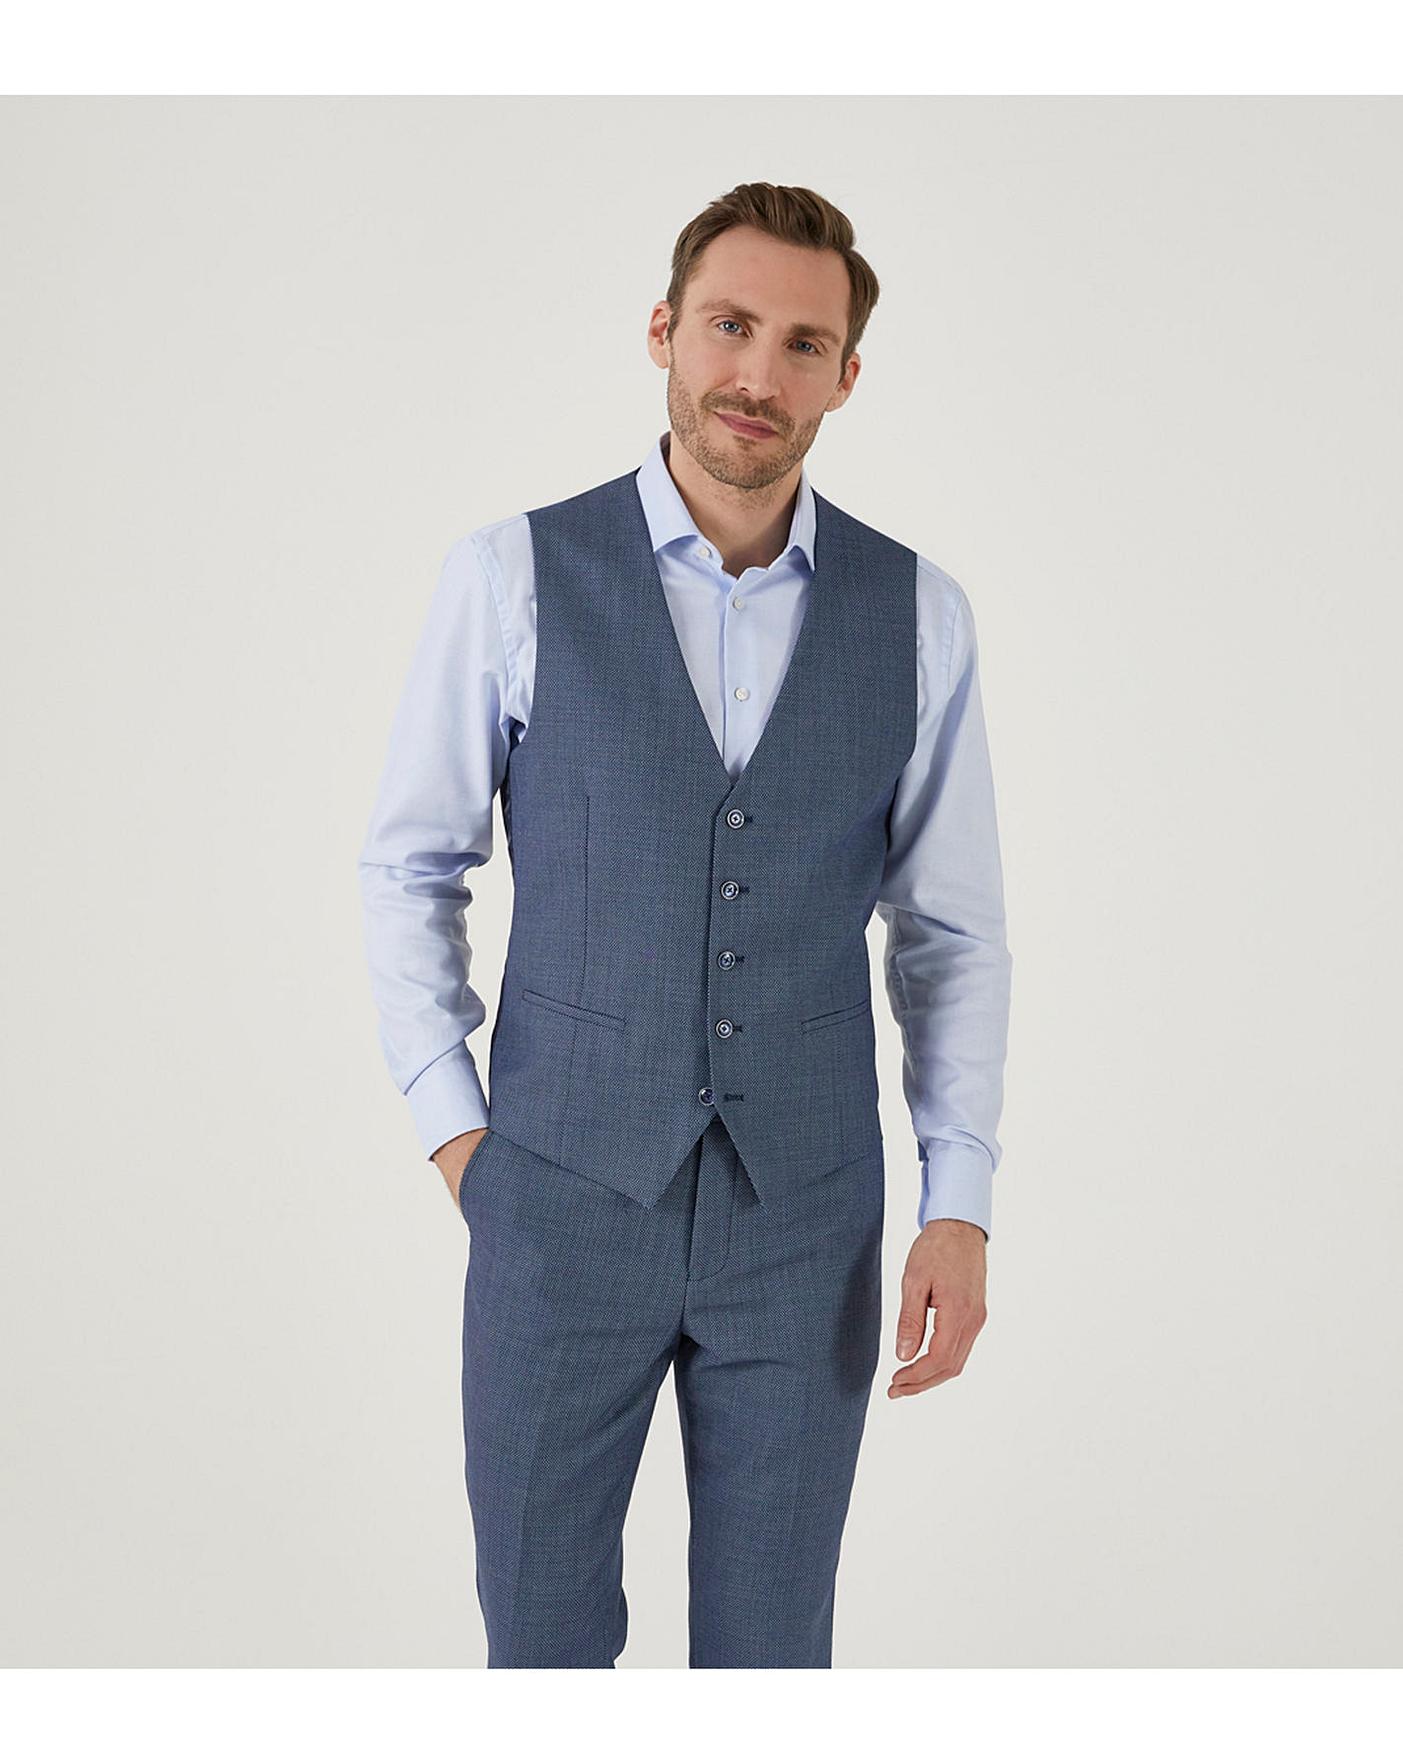 7 Blue Suit Grey Vest ideas  suit and tie suit style gentleman style